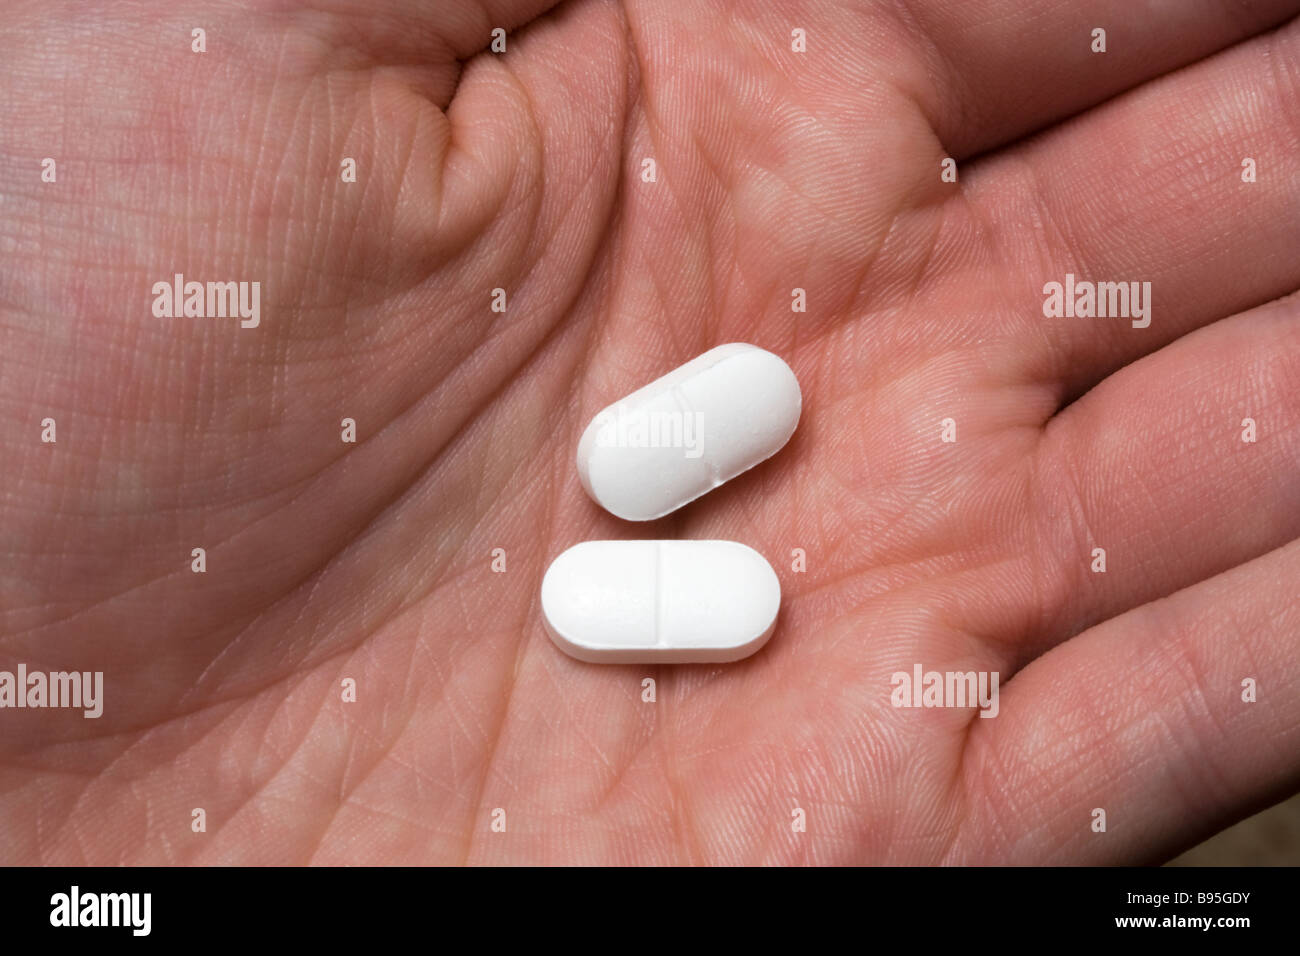 Deux pilules antidouleur dans la main Banque D'Images